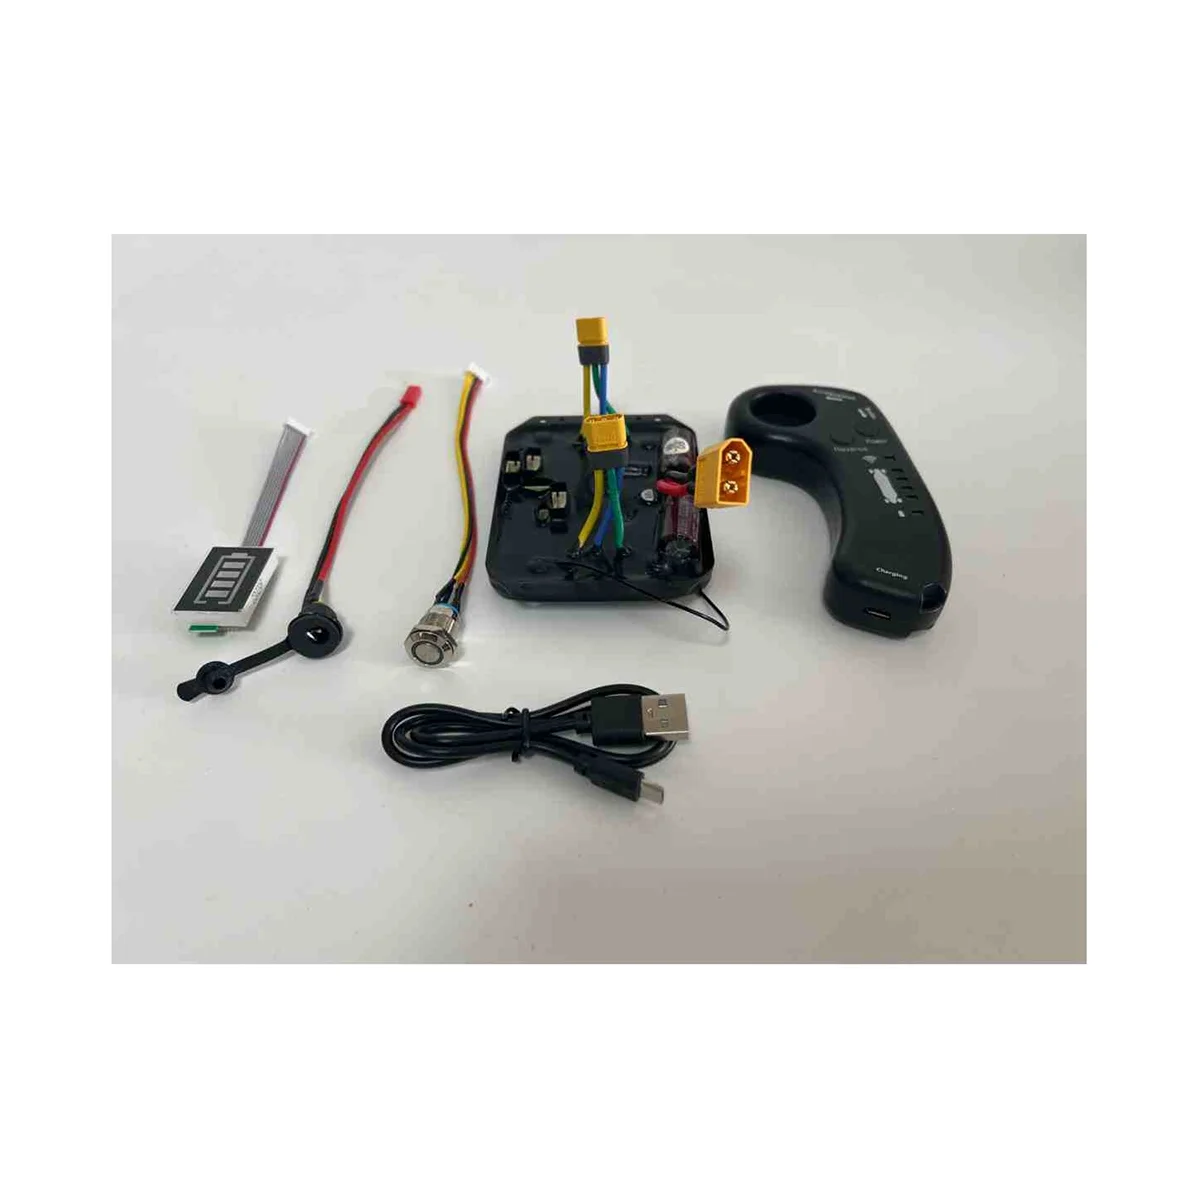 10S Двухмоторный Электрический Контроллер для Скейтбординга Longboard Drive ESC Заменяет Материнскую Плату Управления Дистанционным Самокатом (B) 0